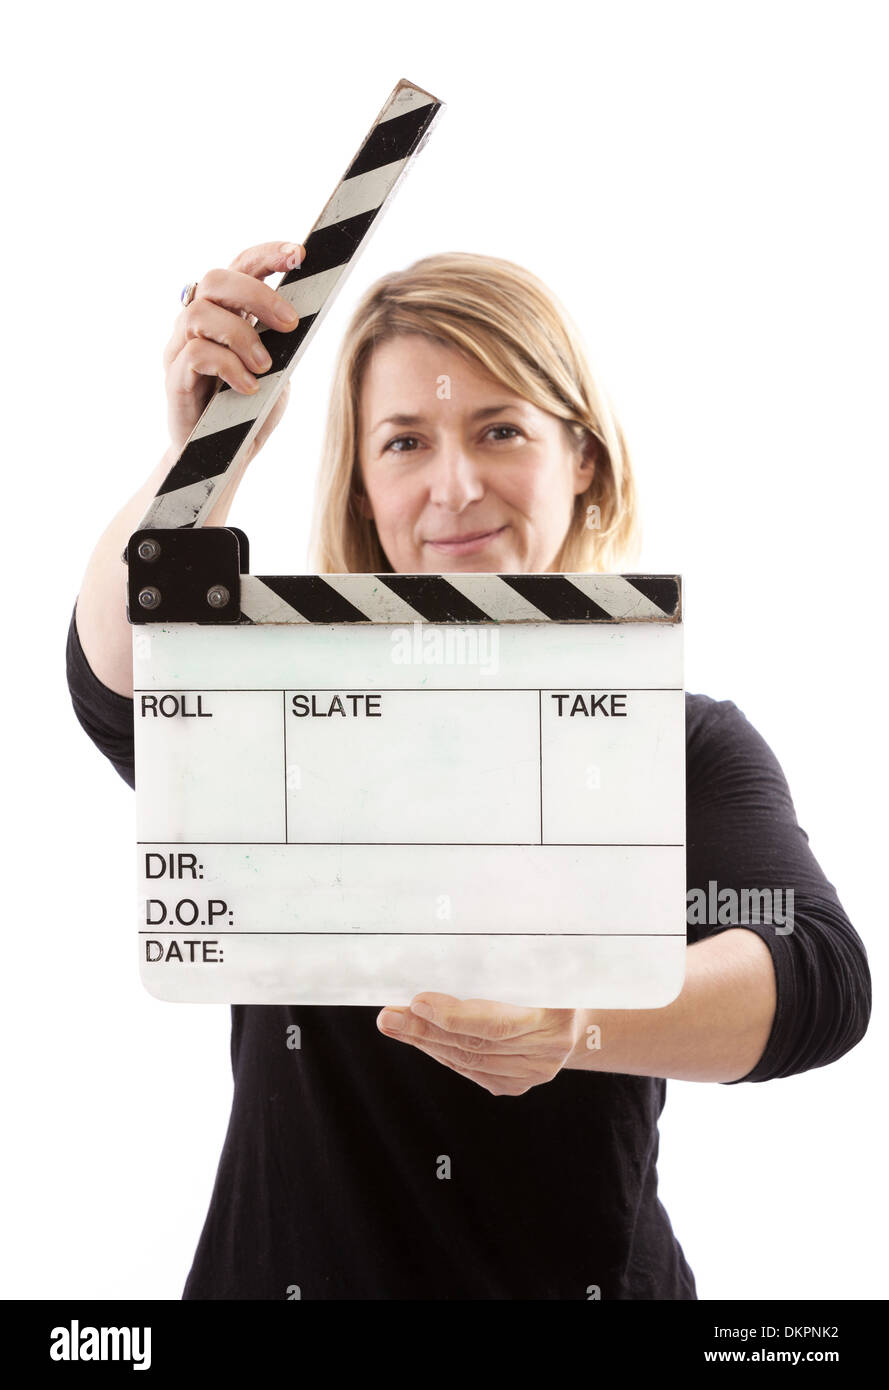 Frau mit einem offenen Filmklappe auf weißem Hintergrund. Selektiven Fokus auf dem Brett. Stockfoto